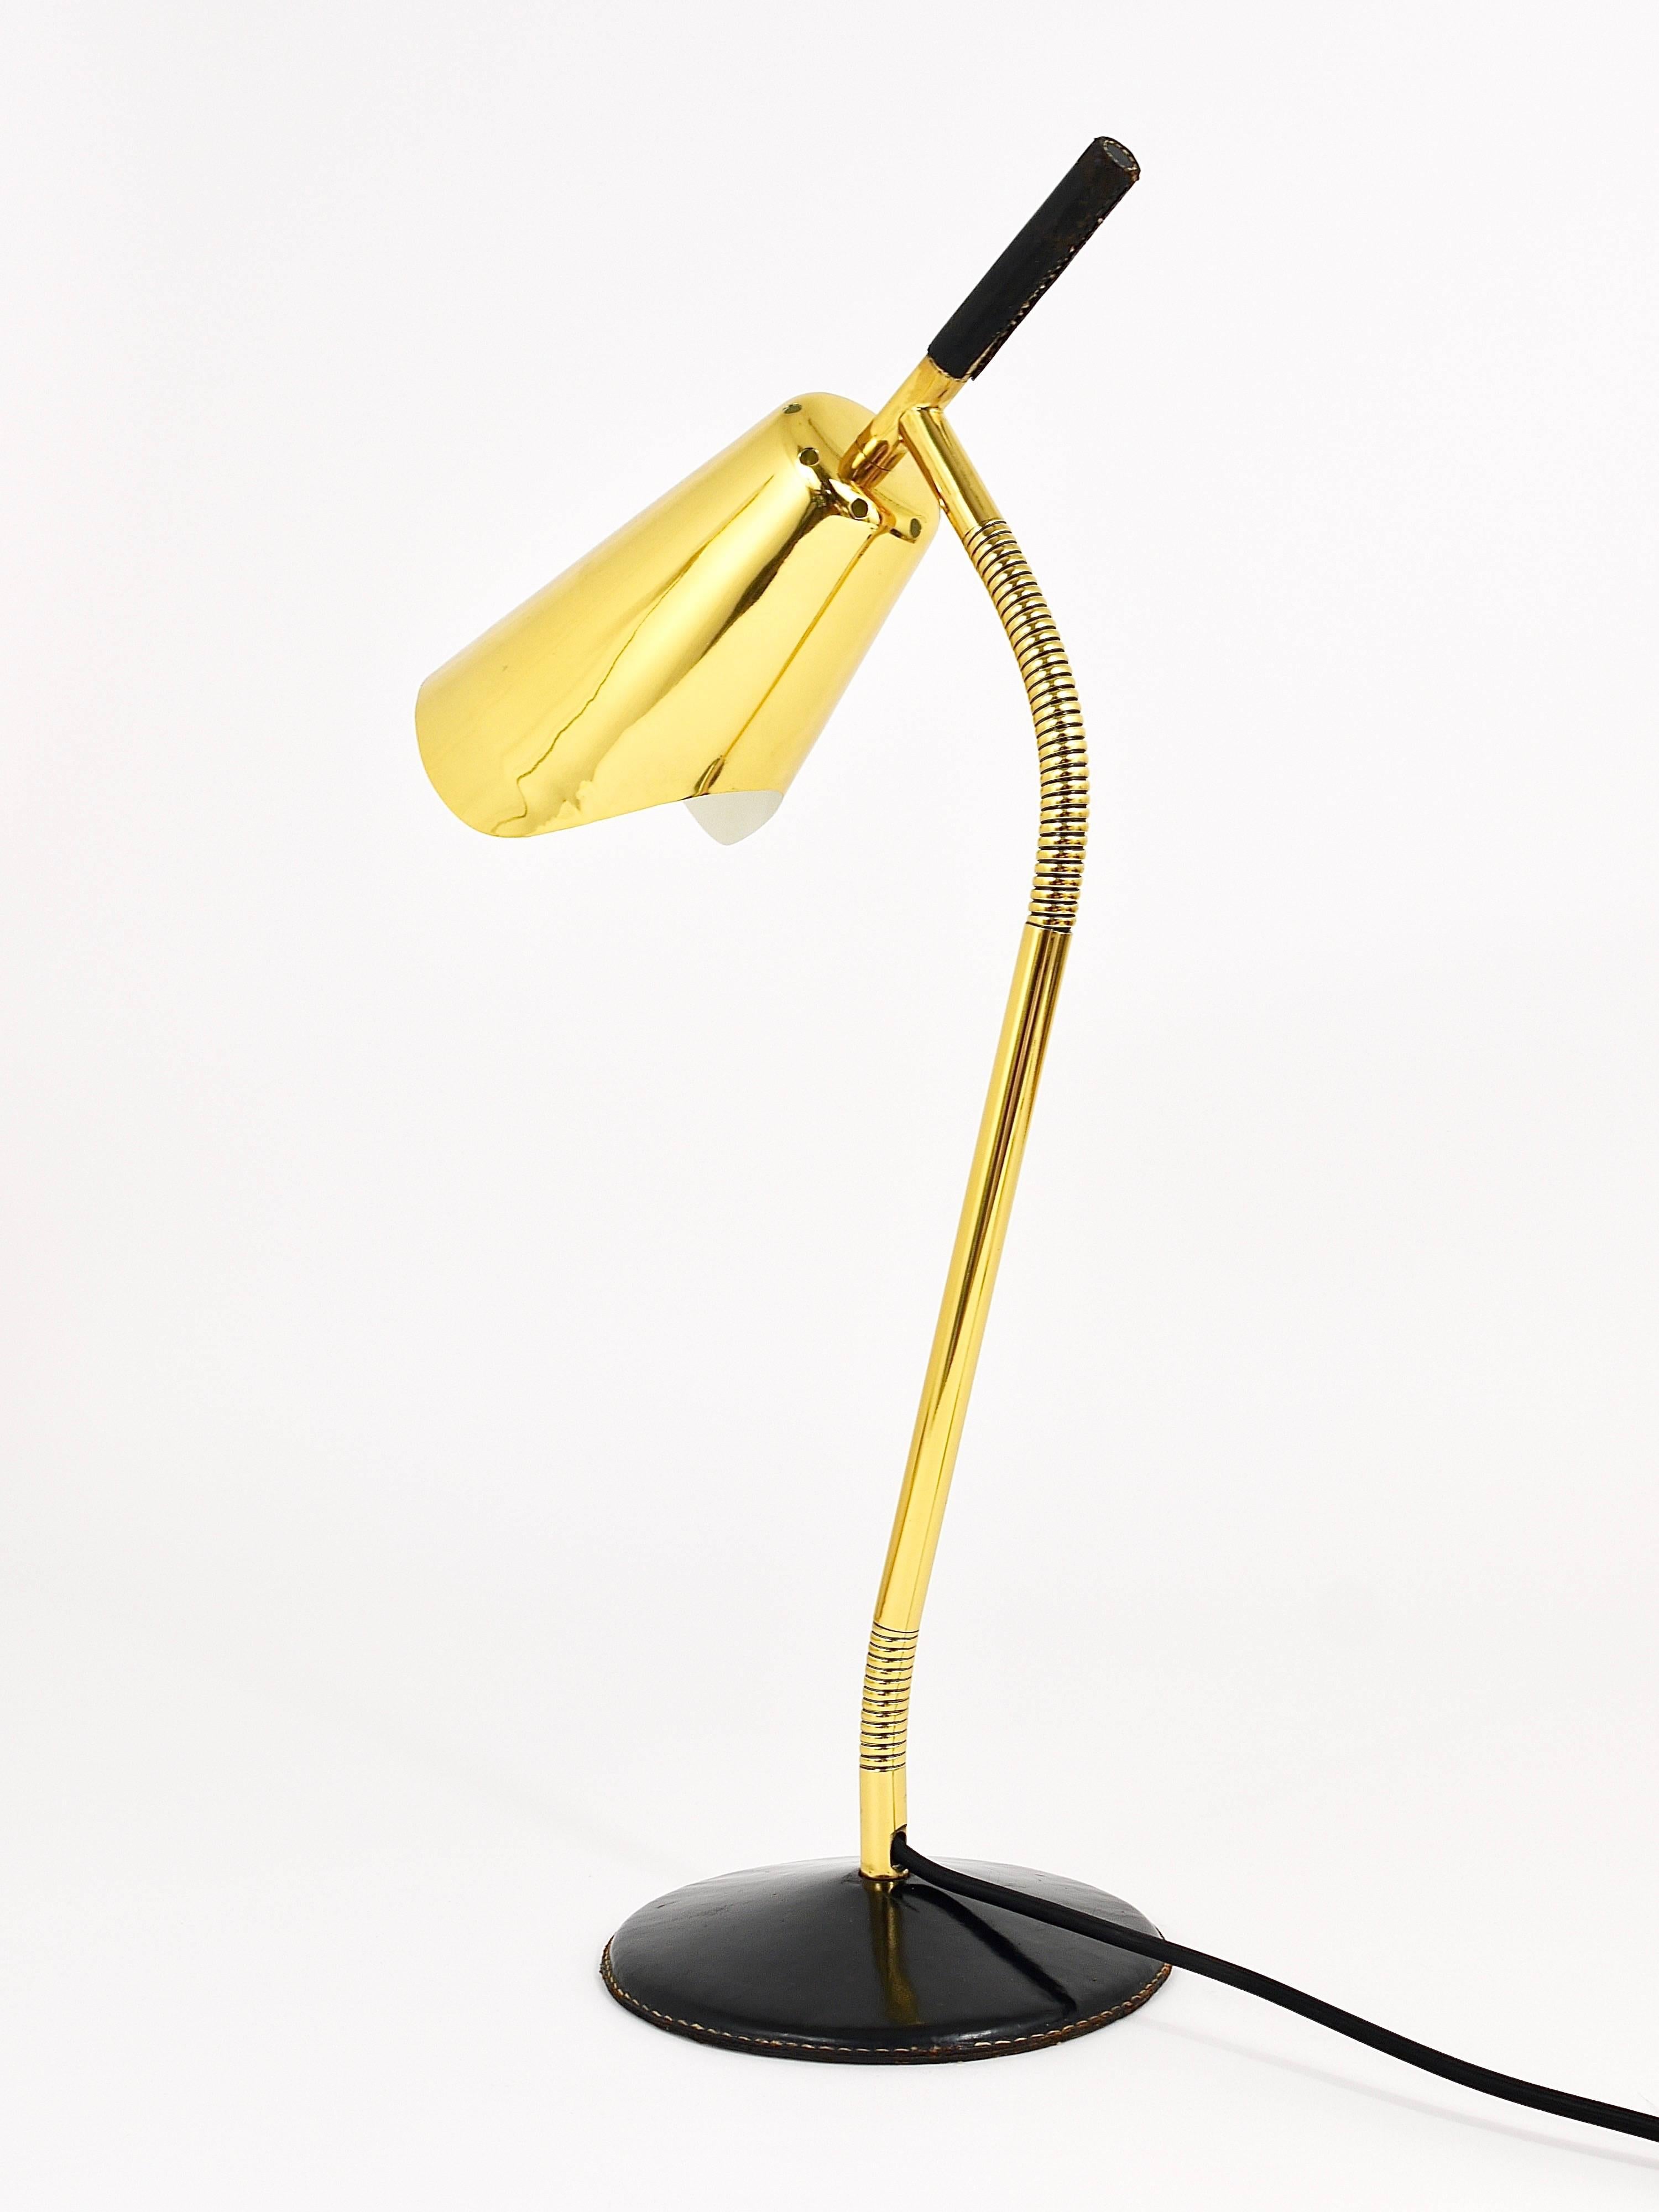 Wir sind stolz darauf, diese sehr seltene und schöne Tisch- oder Schreibtischlampe aus den 1950er Jahren anbieten zu können. Entworfen und ausgeführt von Carl Aubock, Österreich. Diese Lampe ist aus Messing gefertigt und hat einen lederbezogenen